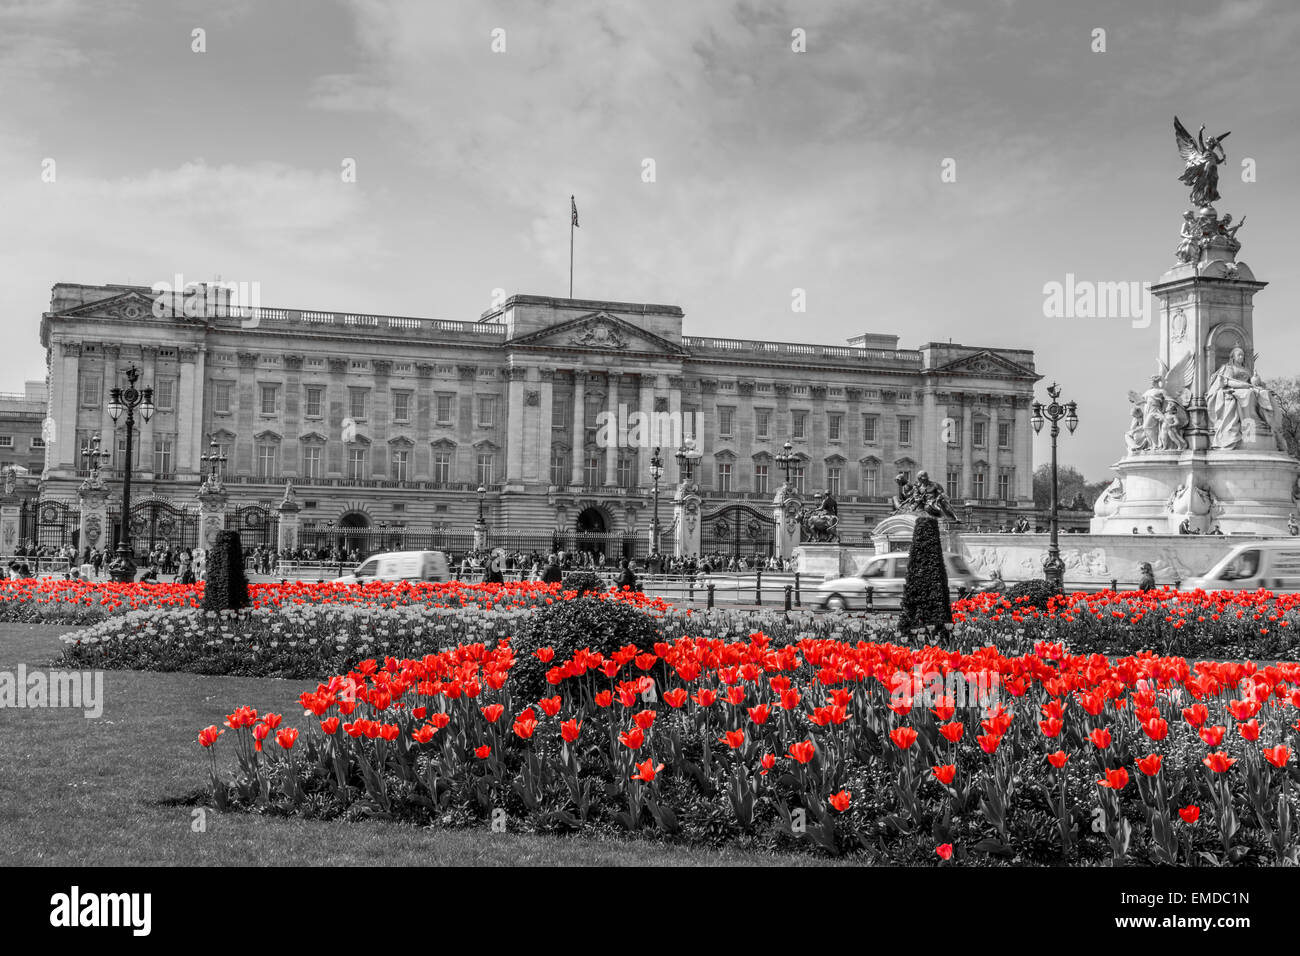 Una vista horizontal del Palacio de Buckingham, en blanco y negro con tulipanes de color rojo en primer plano ,la ciudad de Westminster, Londres, Gran Bretaña. Foto de stock